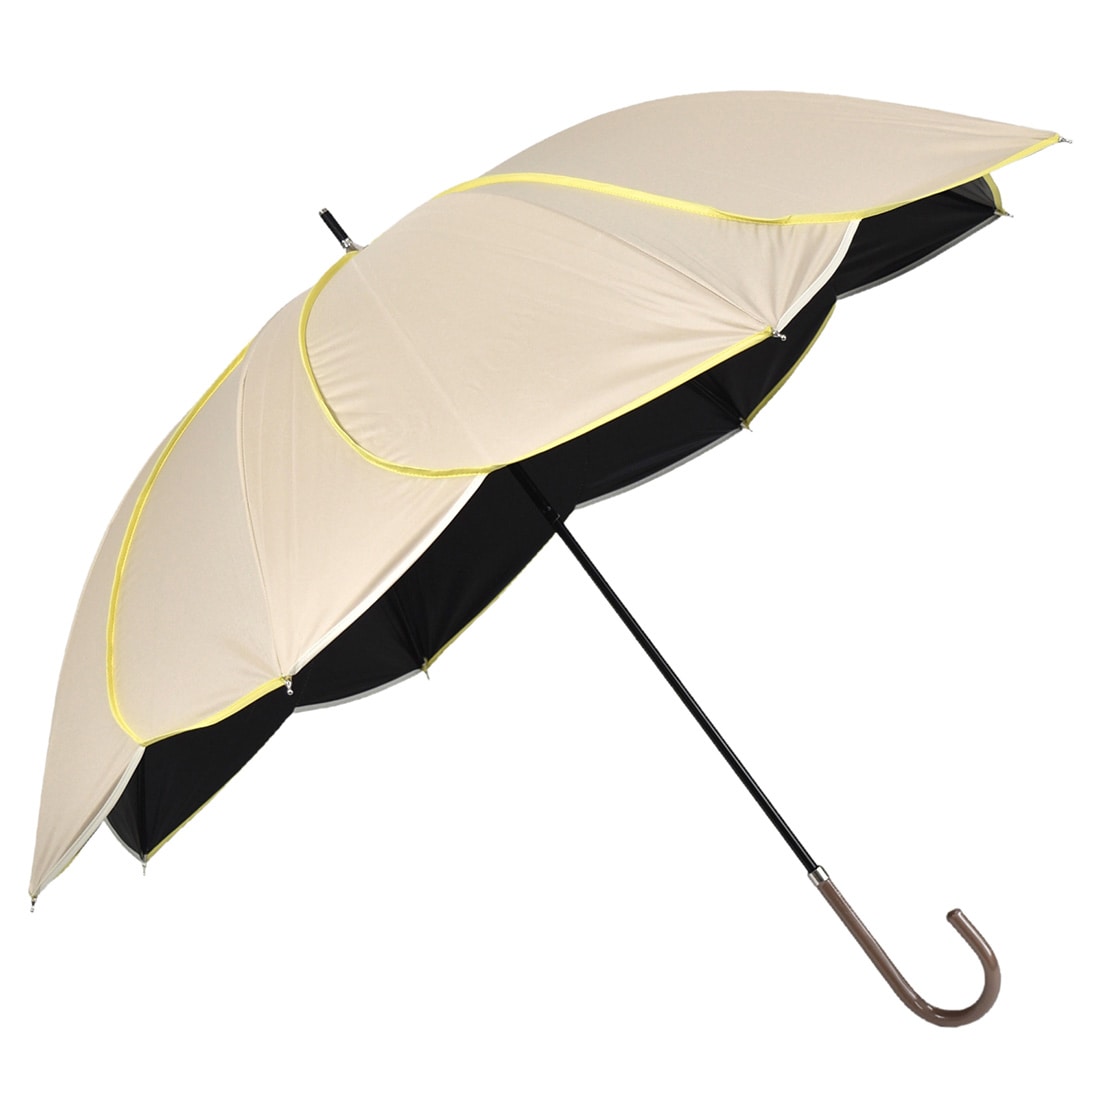 晴雨兼用 日傘 雨傘 because 長傘 PUバイカラーパイピング 50cm 全4色 暑さ 熱中症 日焼け 紫外線 UV 対策 撥水 防水 おしゃれ 通年用 大人 レディース 女性 50cm ベージュ